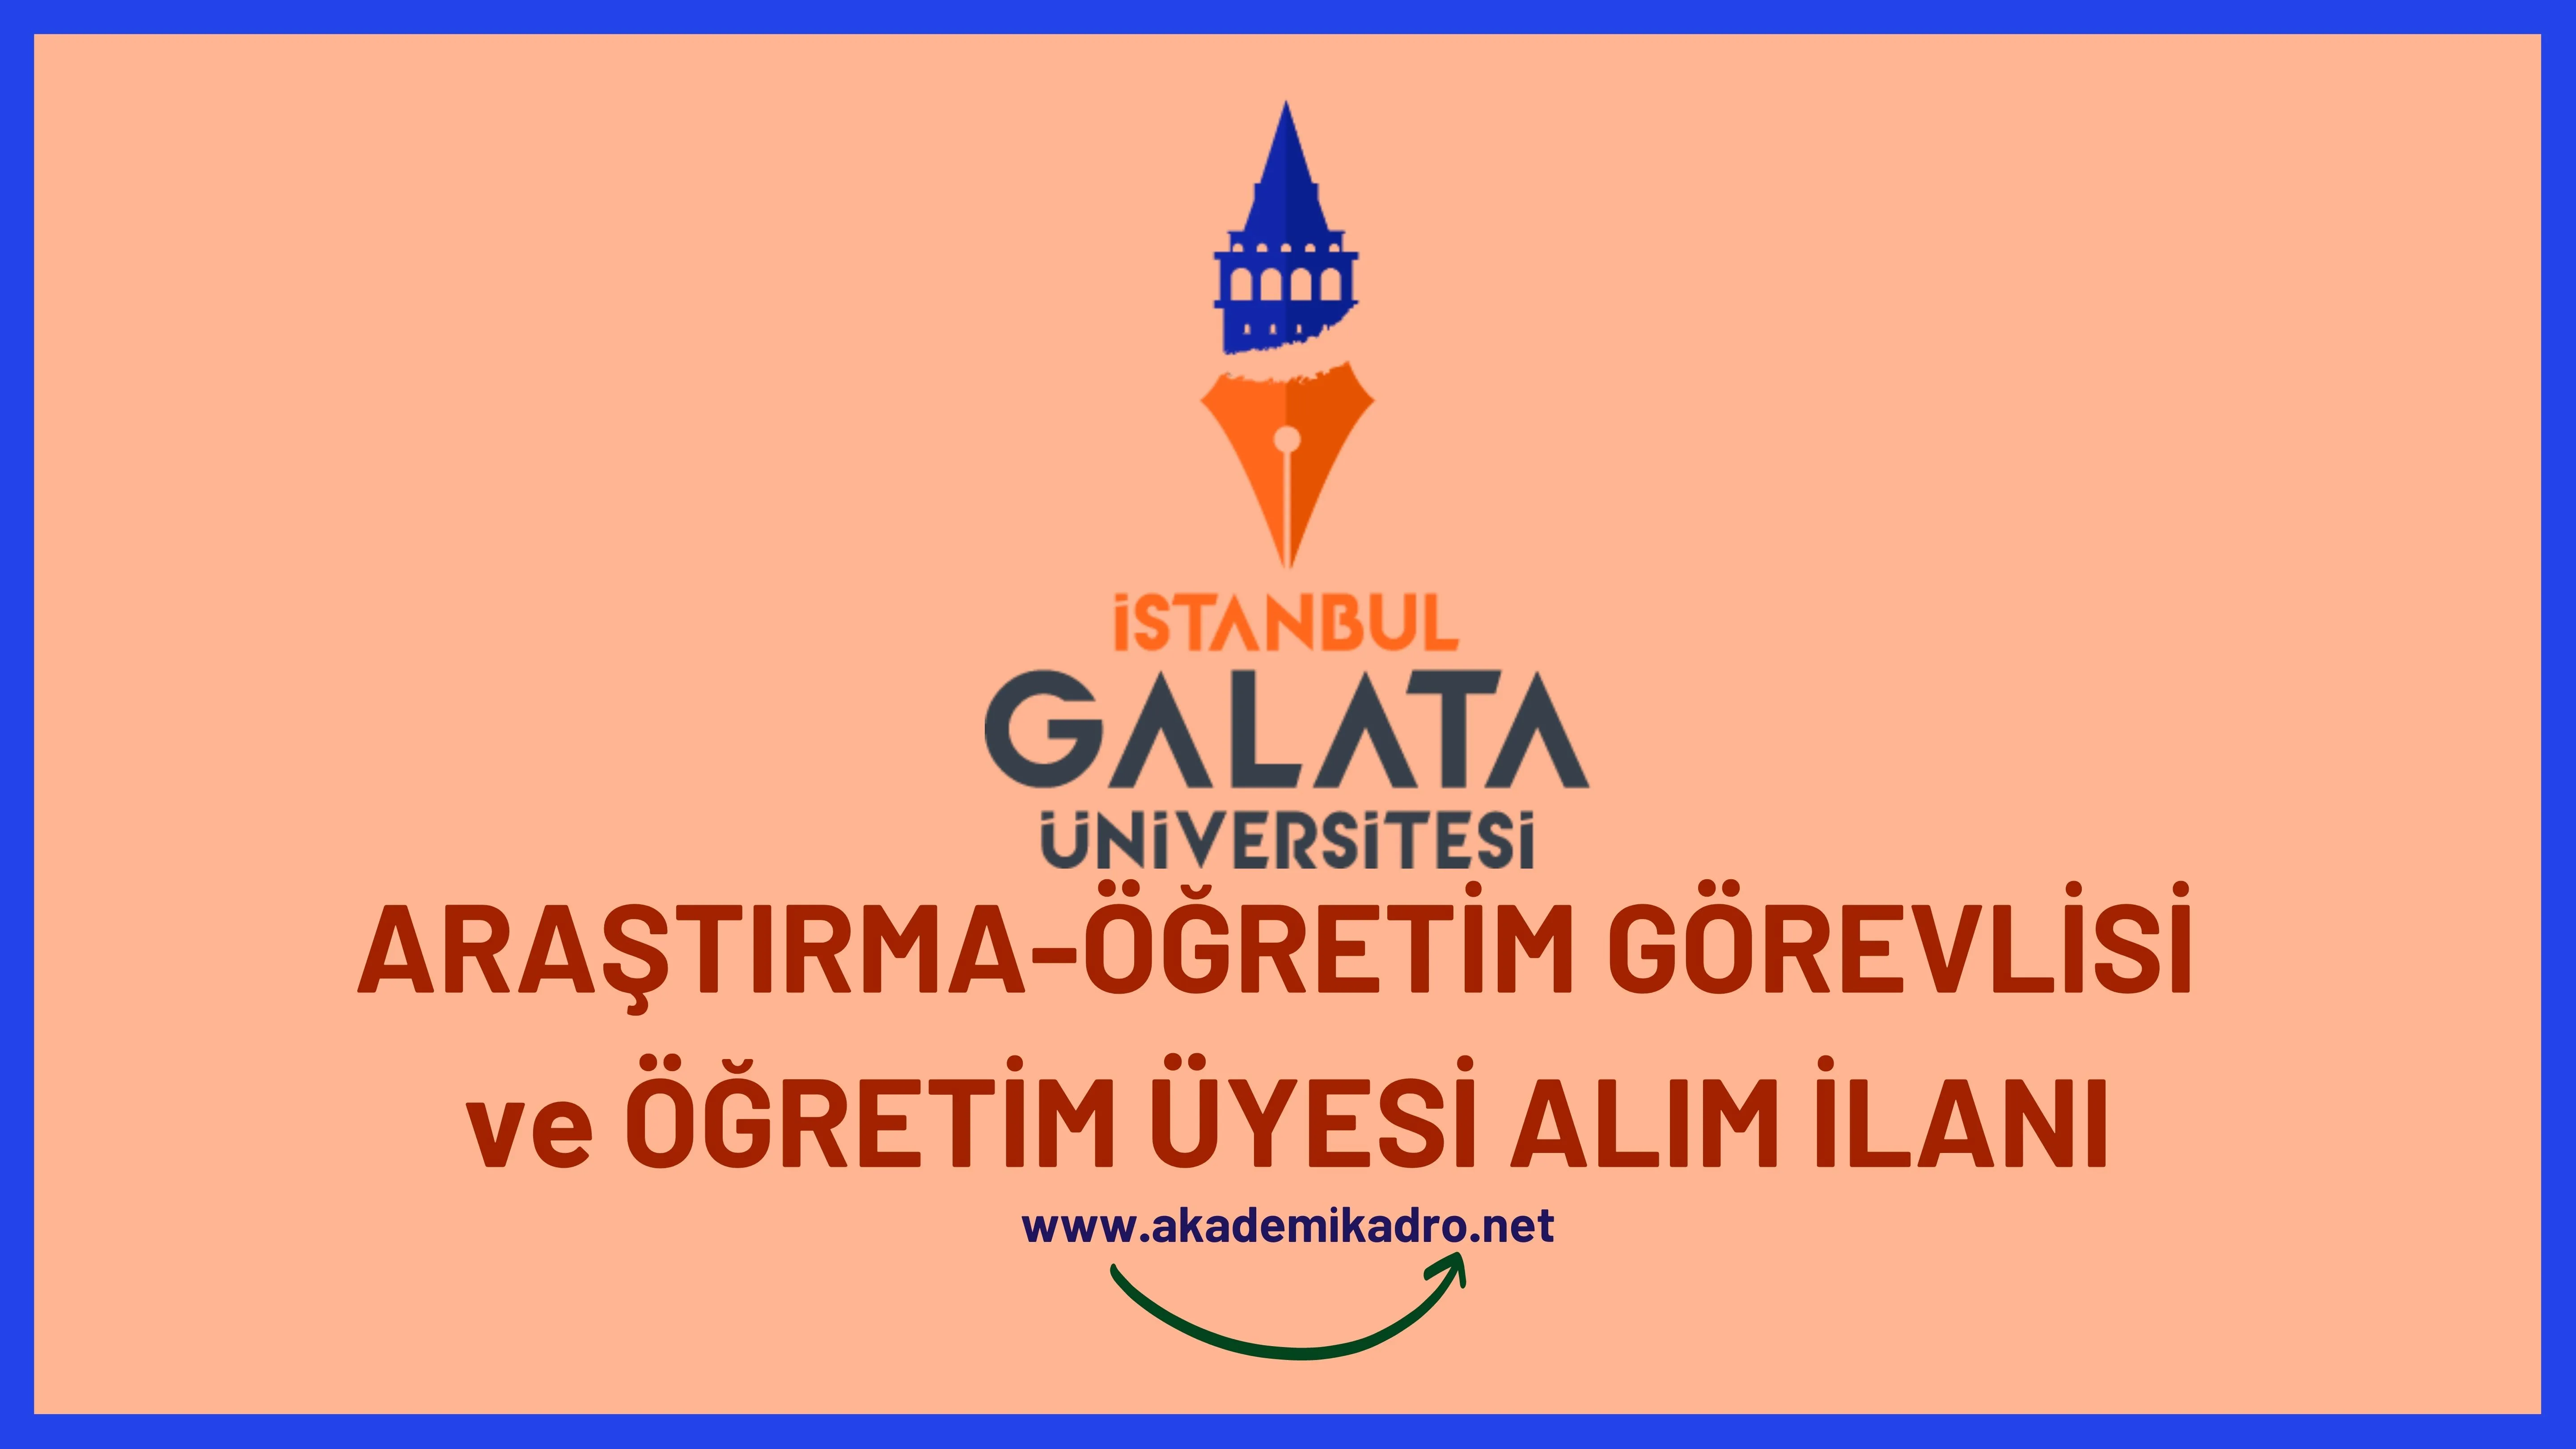 İstanbul Galata Üniversitesi birçok alandan 16 akademik personel alacak.